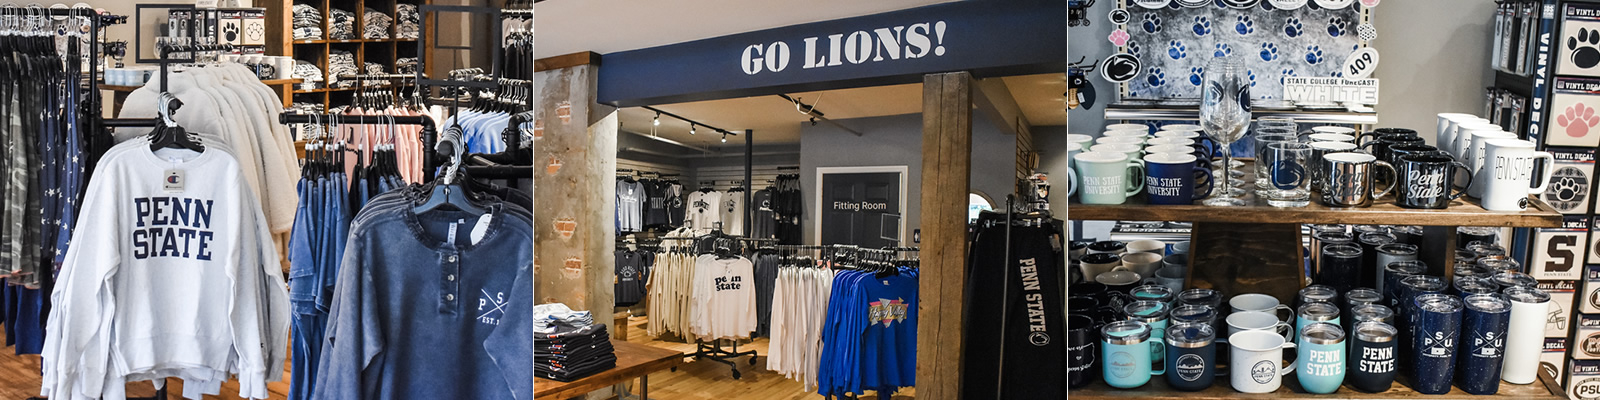 lions gear fan shop